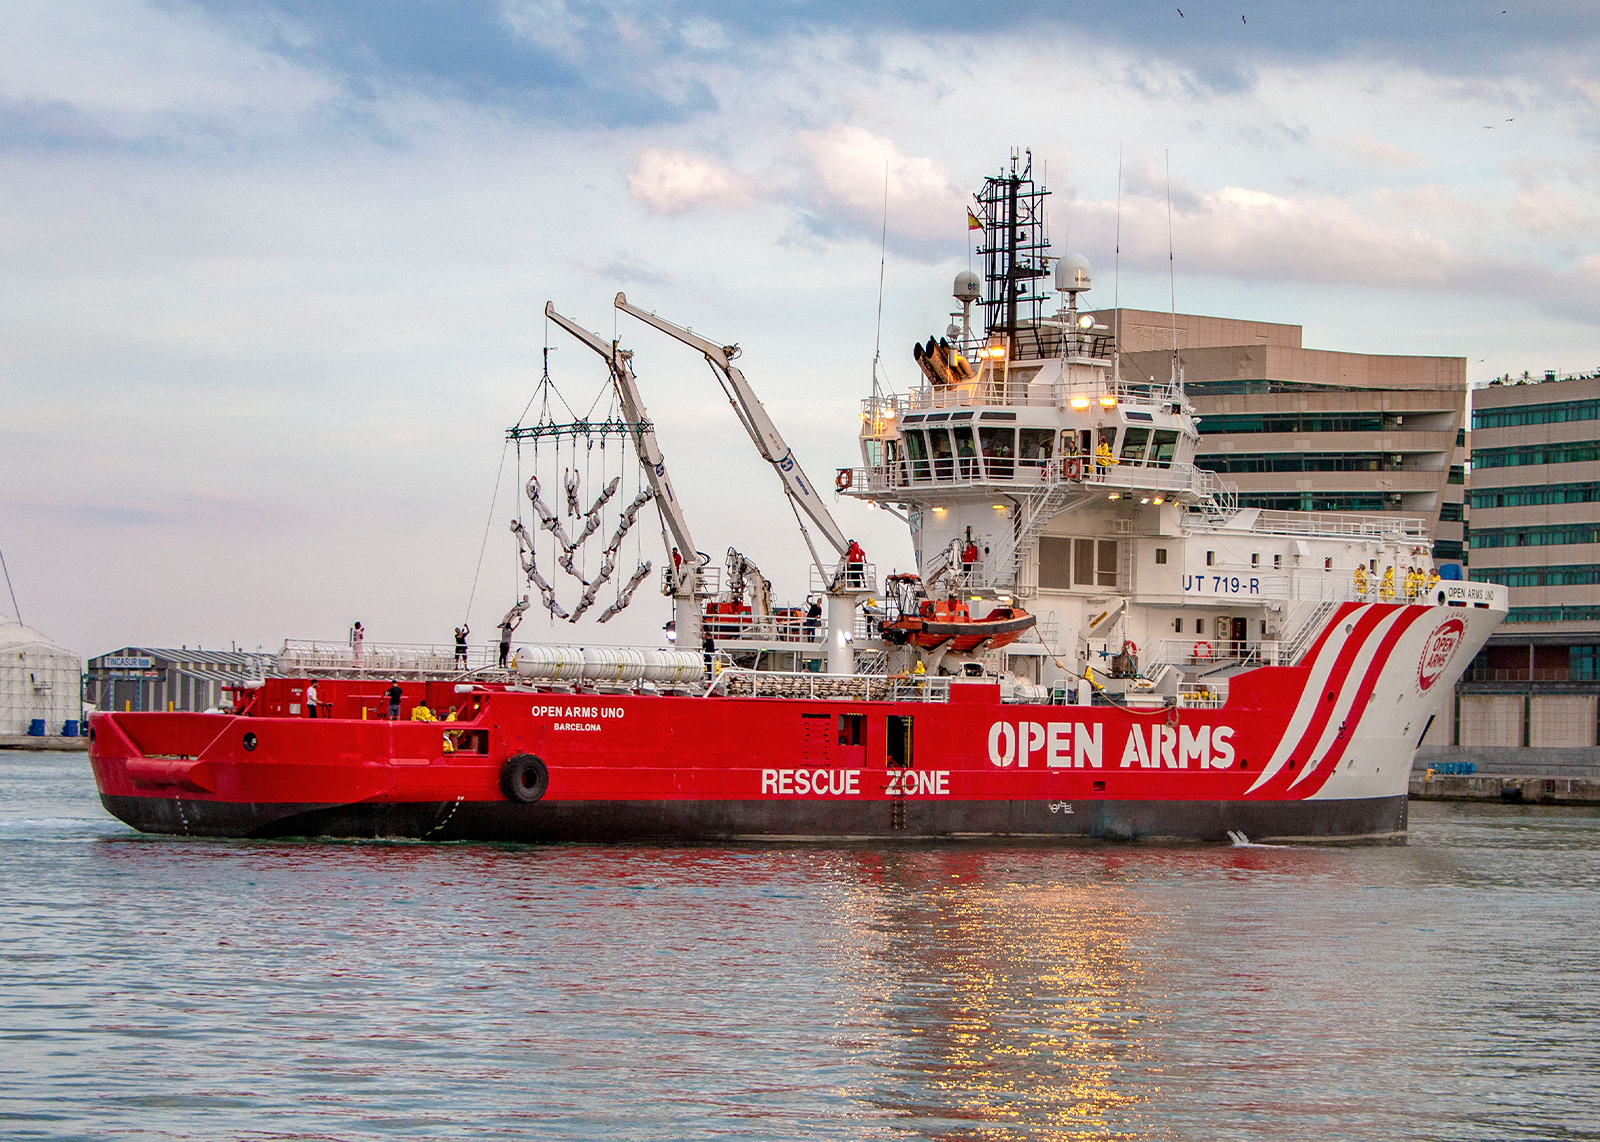 Open Arms Uno official presentation: the humanitarian ship